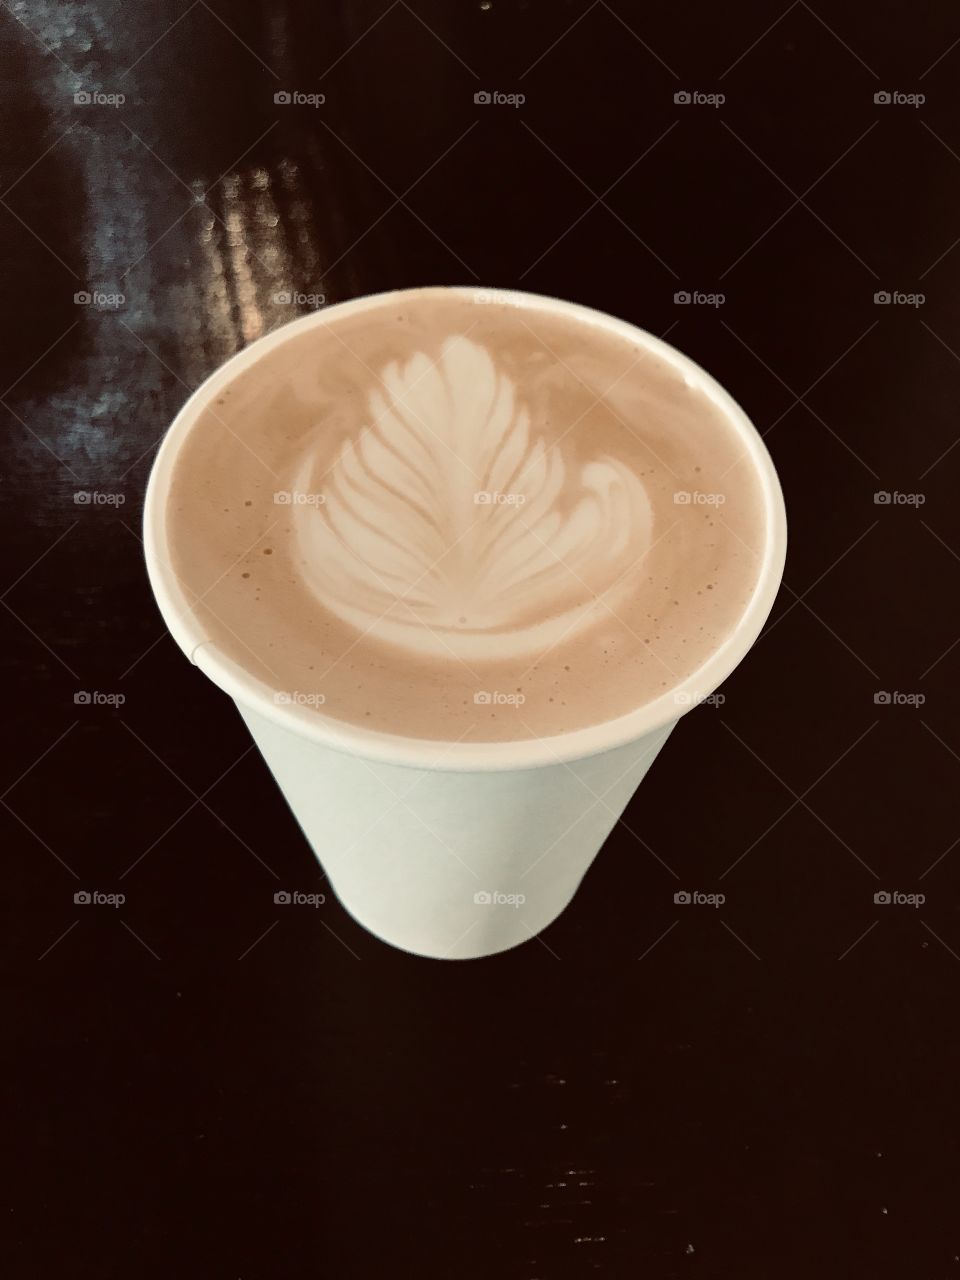 Latte art on dark background 